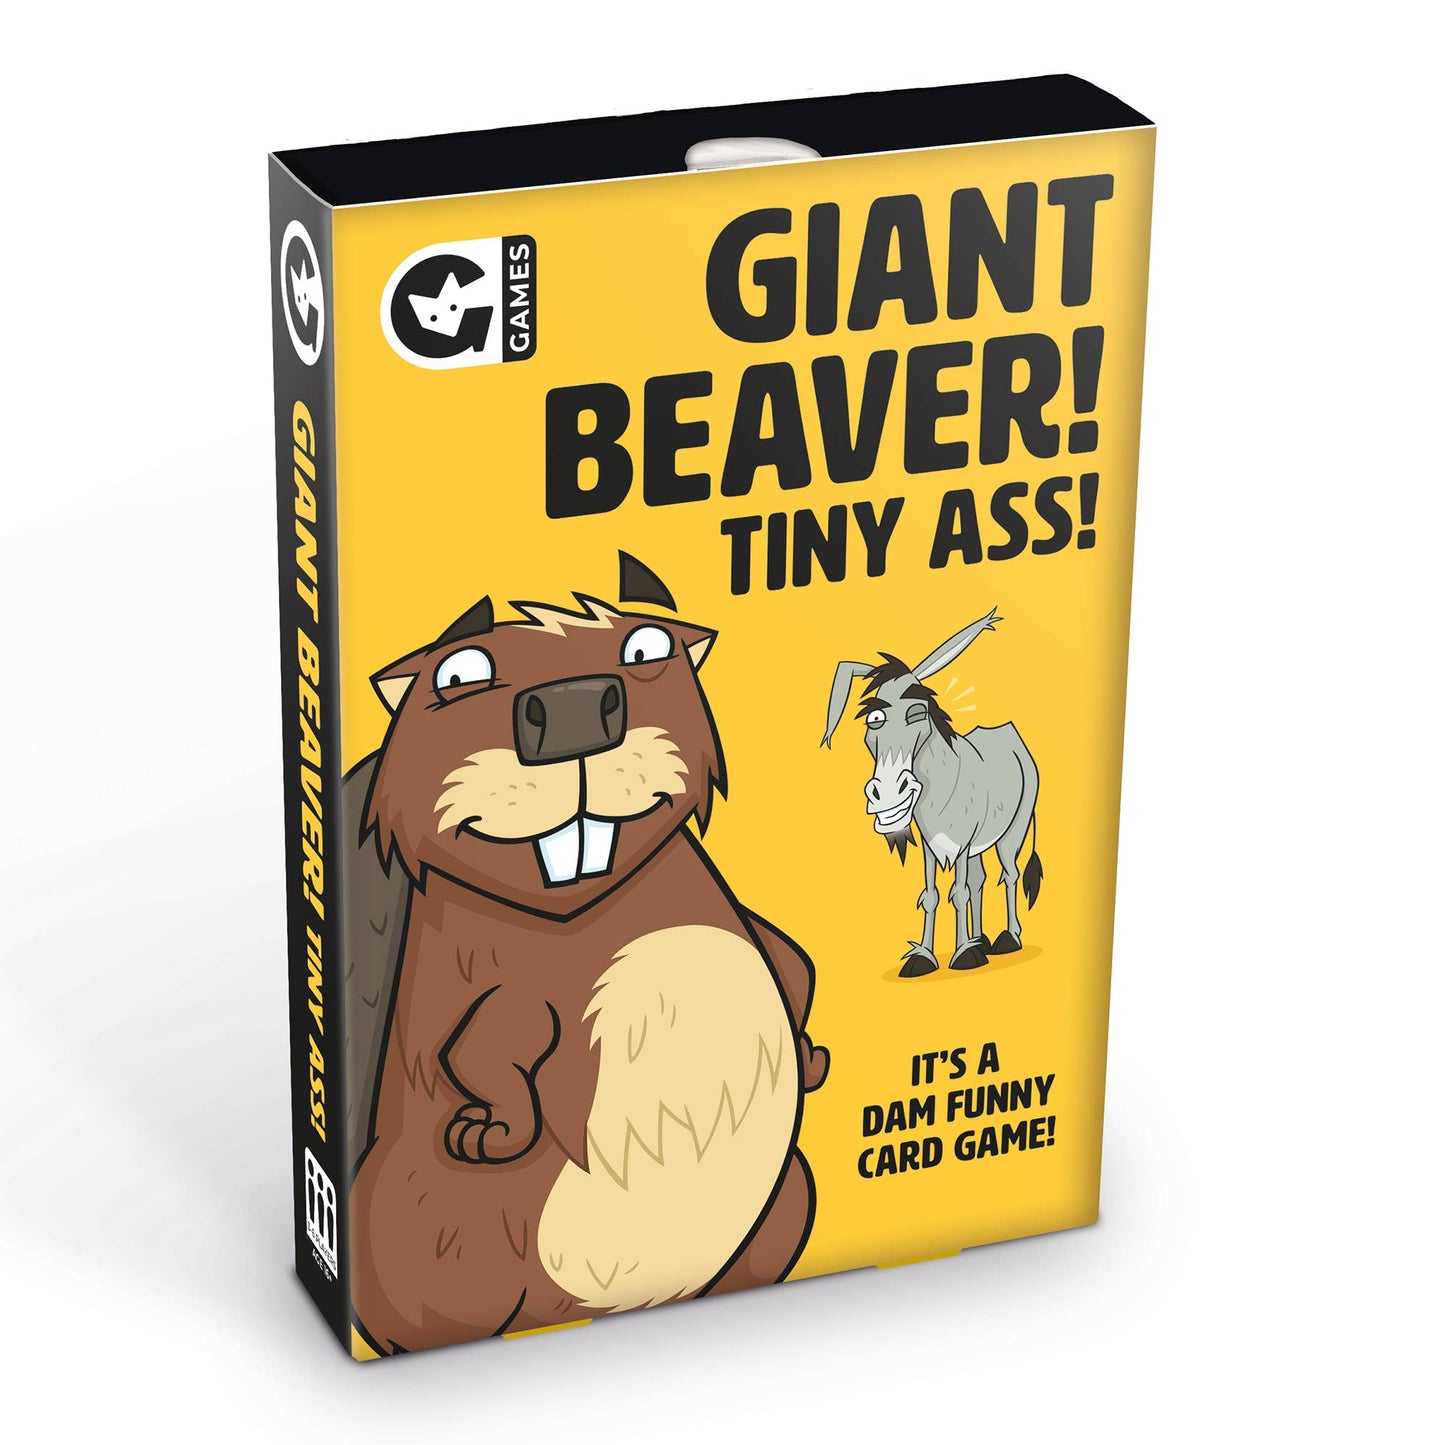 Giant Beaver! Tiny Ass! Card game